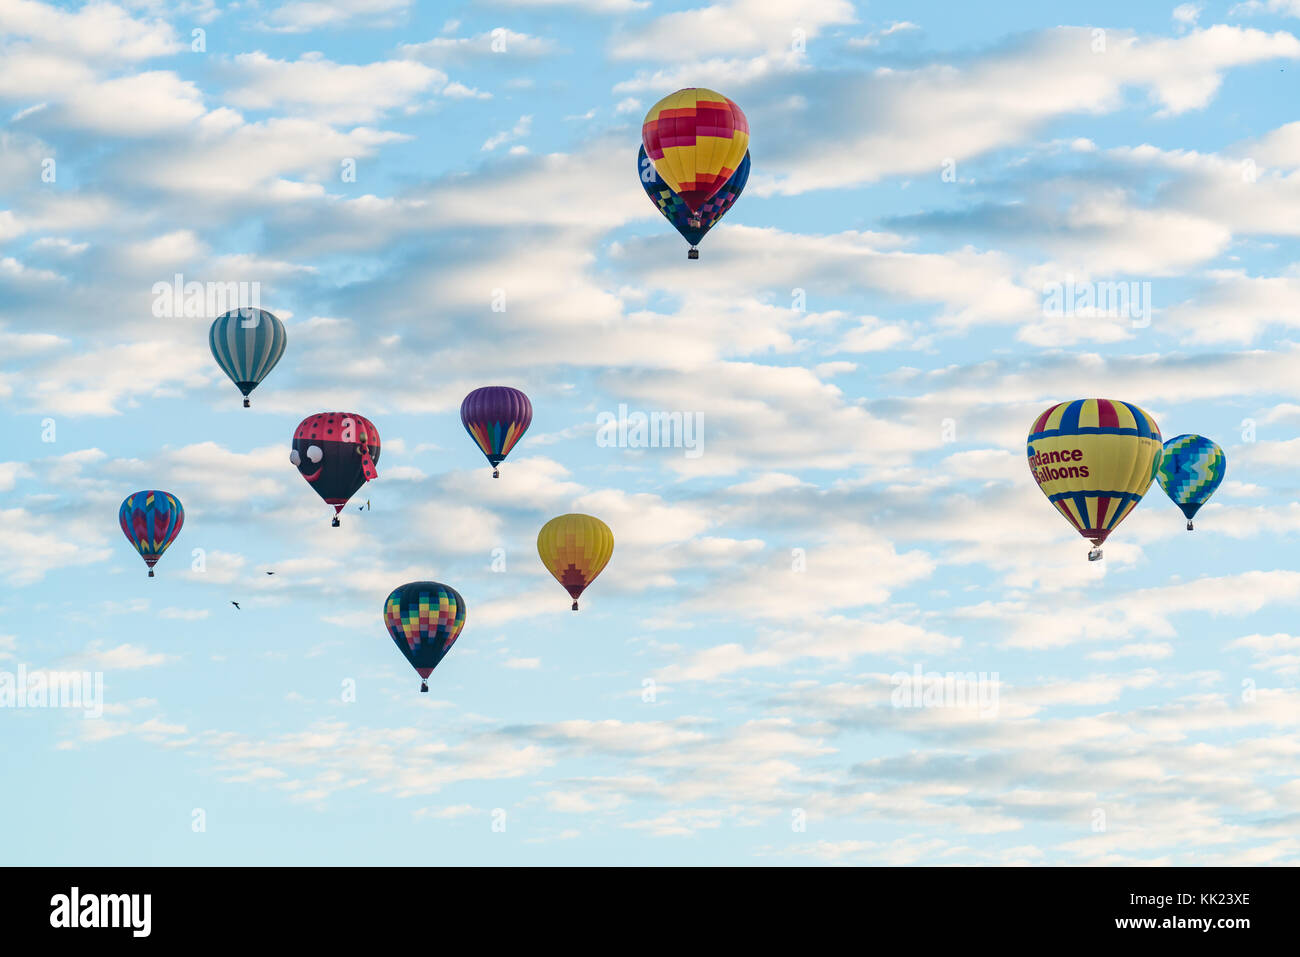 ALBUQUERQUE, NM - OCTOBER 13: Ballons fly over Albuquerque during Albuquerque Ballon Festival on October 13, 2017 Stock Photo